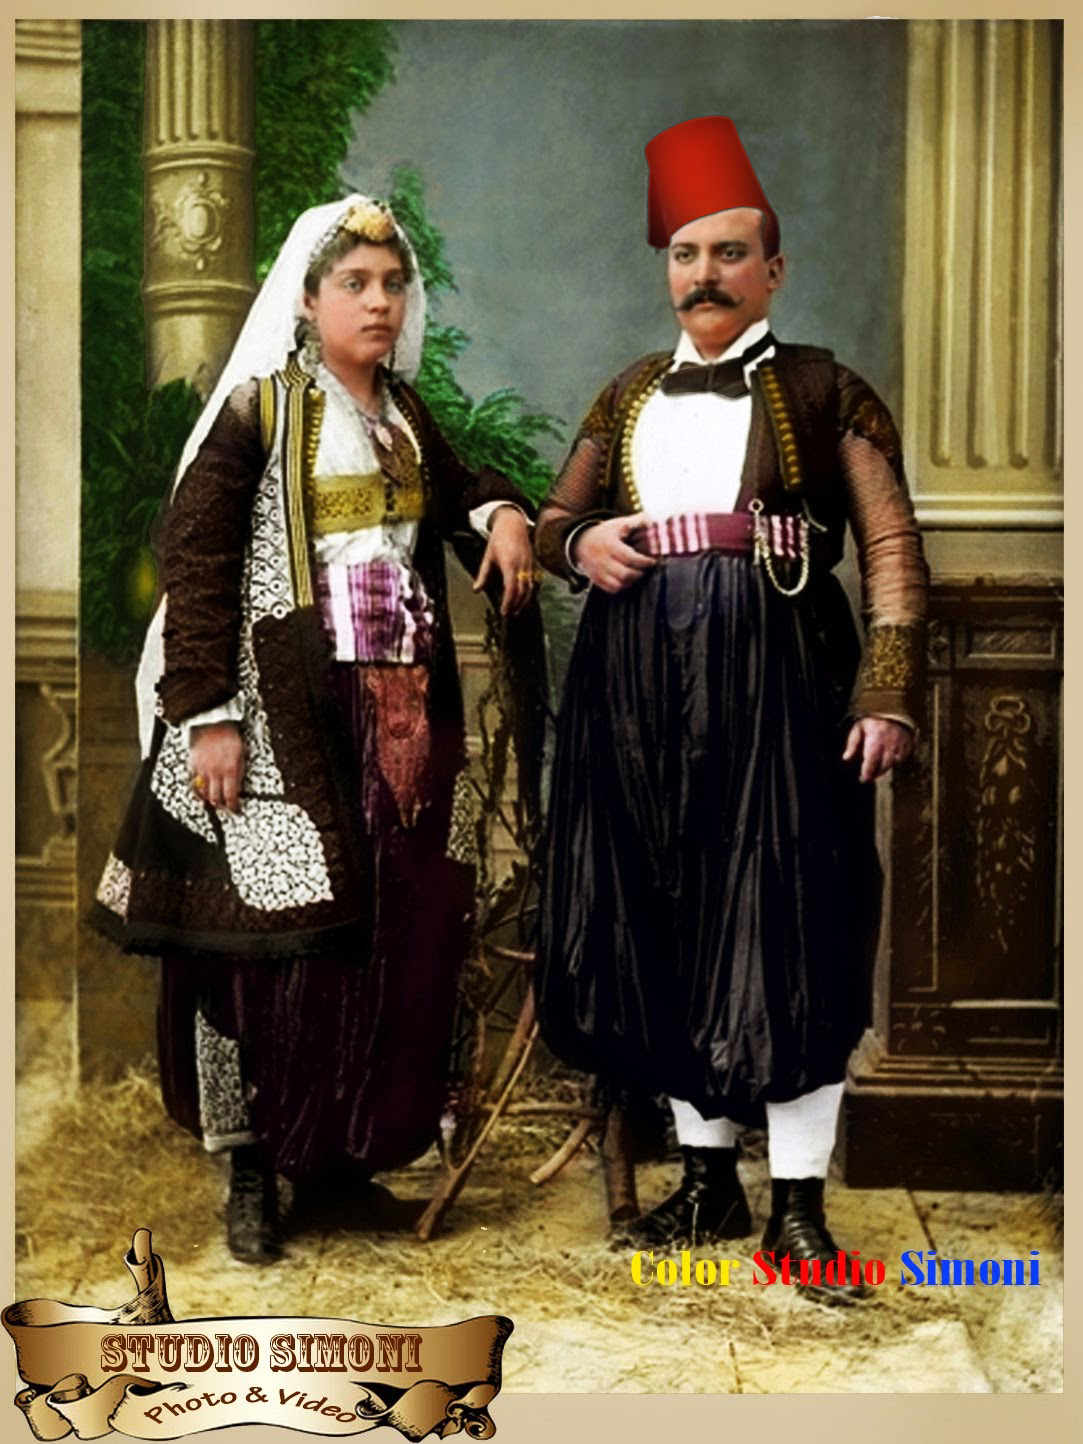 Marubbi Scutari Albania 1914,Color Studio Simoni, Costumi albanesi.﻿